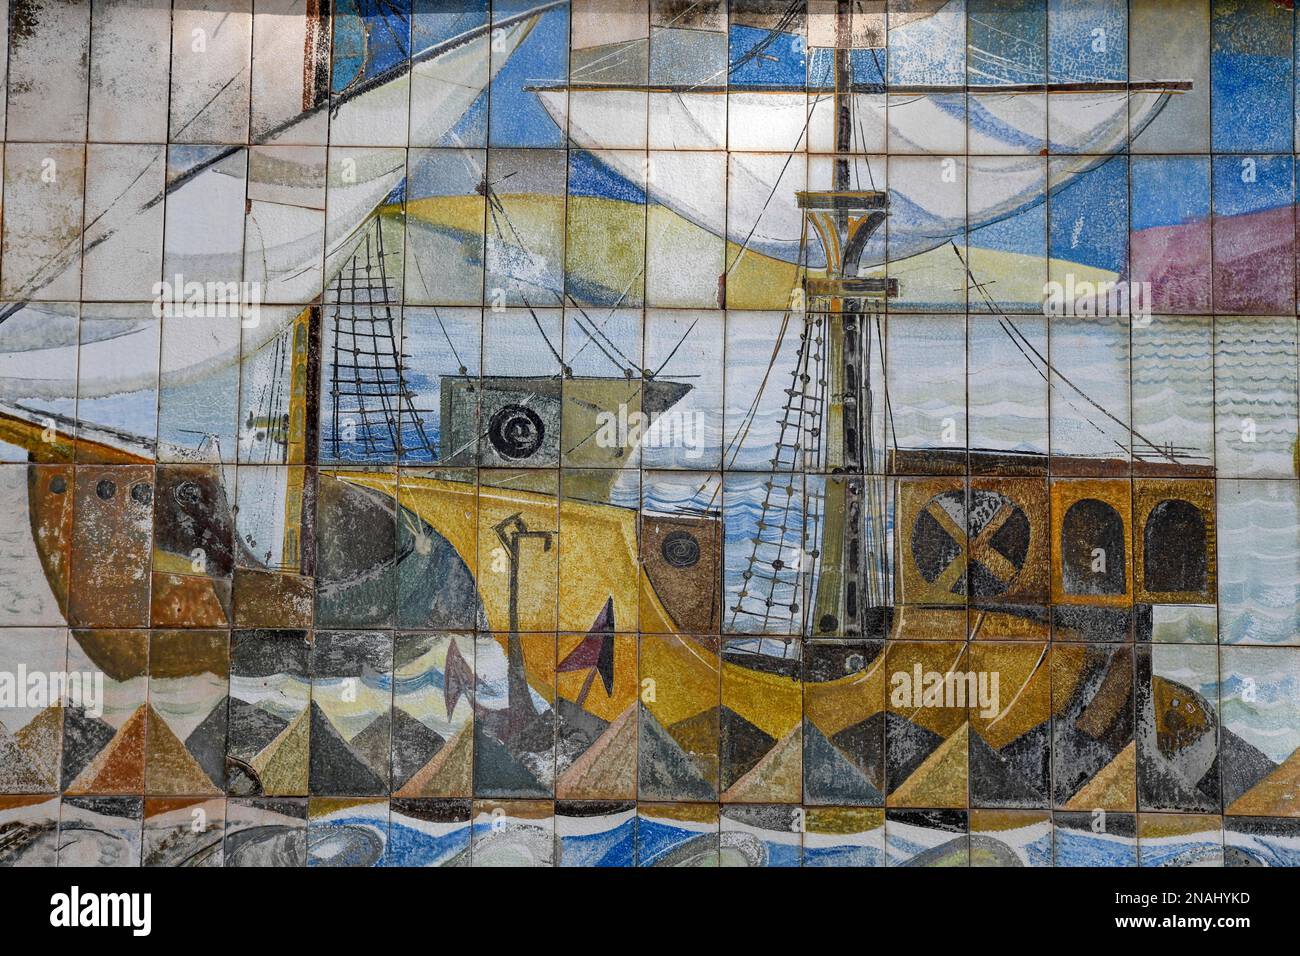 Carreaux muraux peints avec motif marin sur la colline du château, Cartagena, région de Murcie, Espagne Banque D'Images